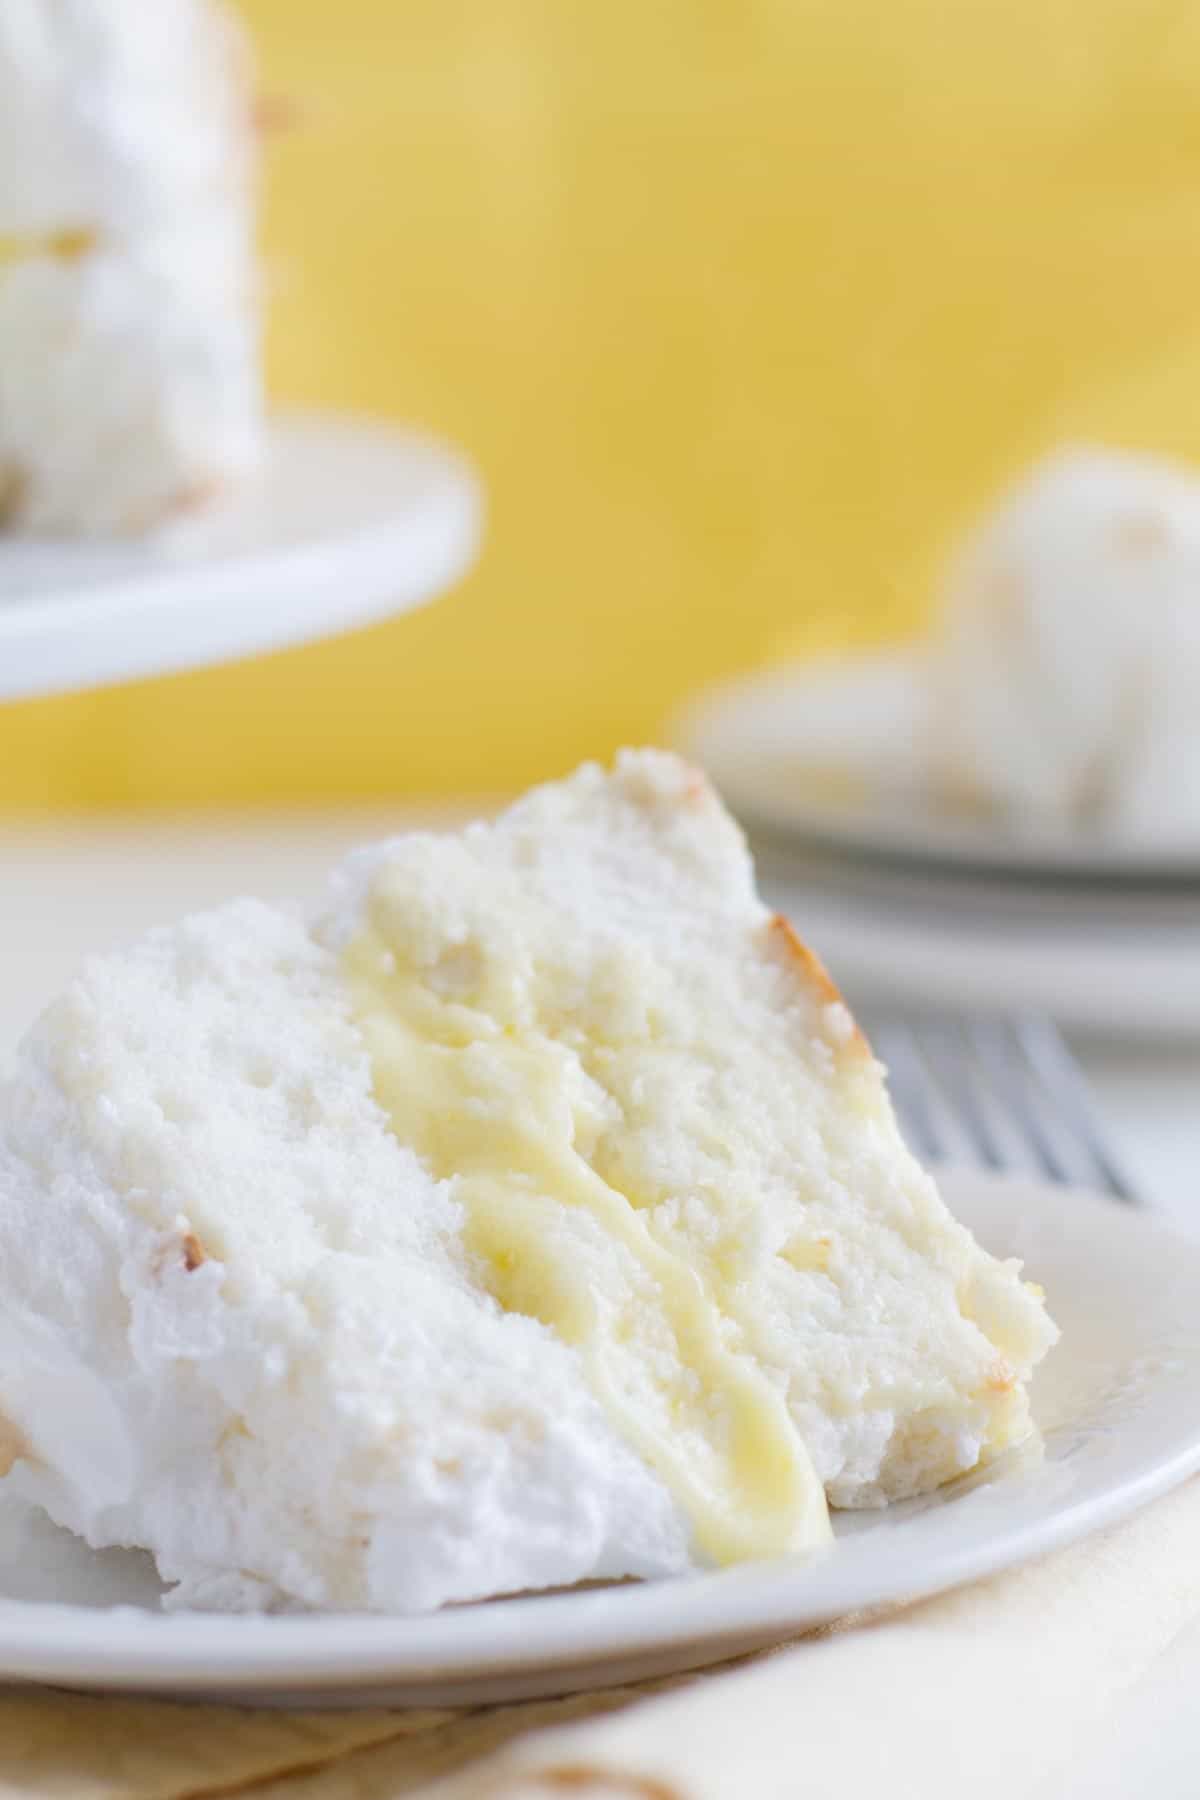 https://www.tasteandtellblog.com/wp-content/uploads/2022/04/Lemon-Meringue-Angel-Cake-3.jpg